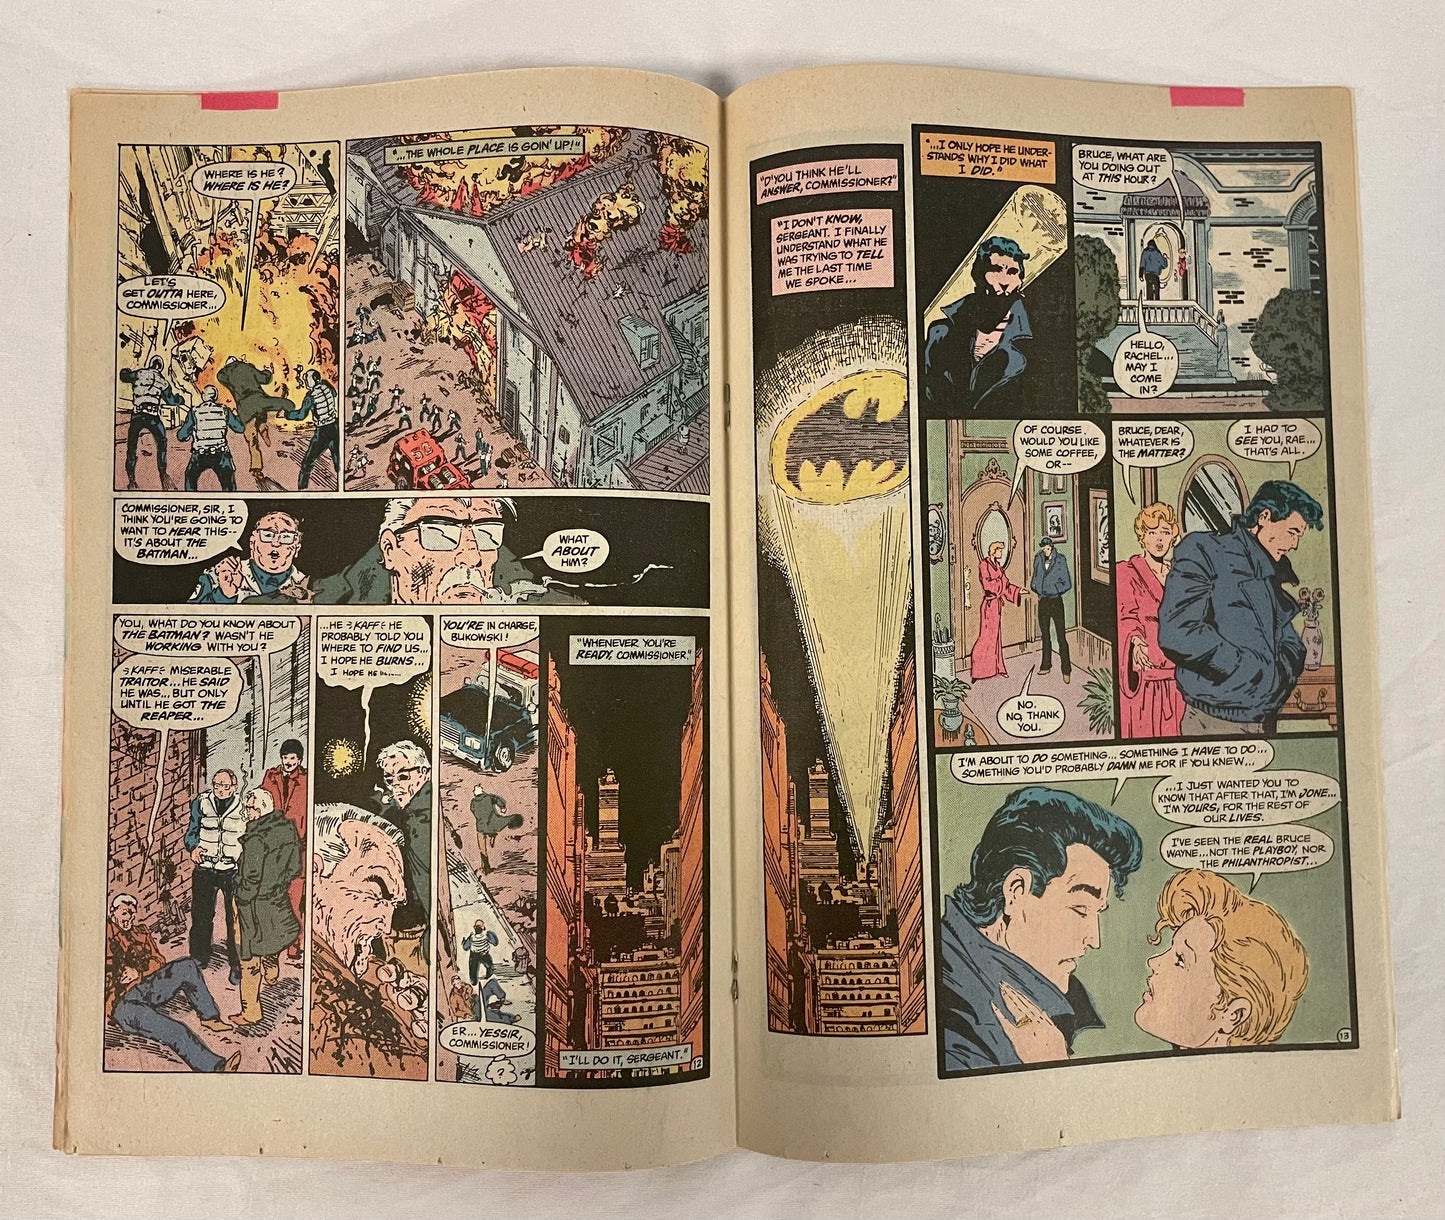 DC Comics Detective Comics No. 578 Batman Year Two Part 4